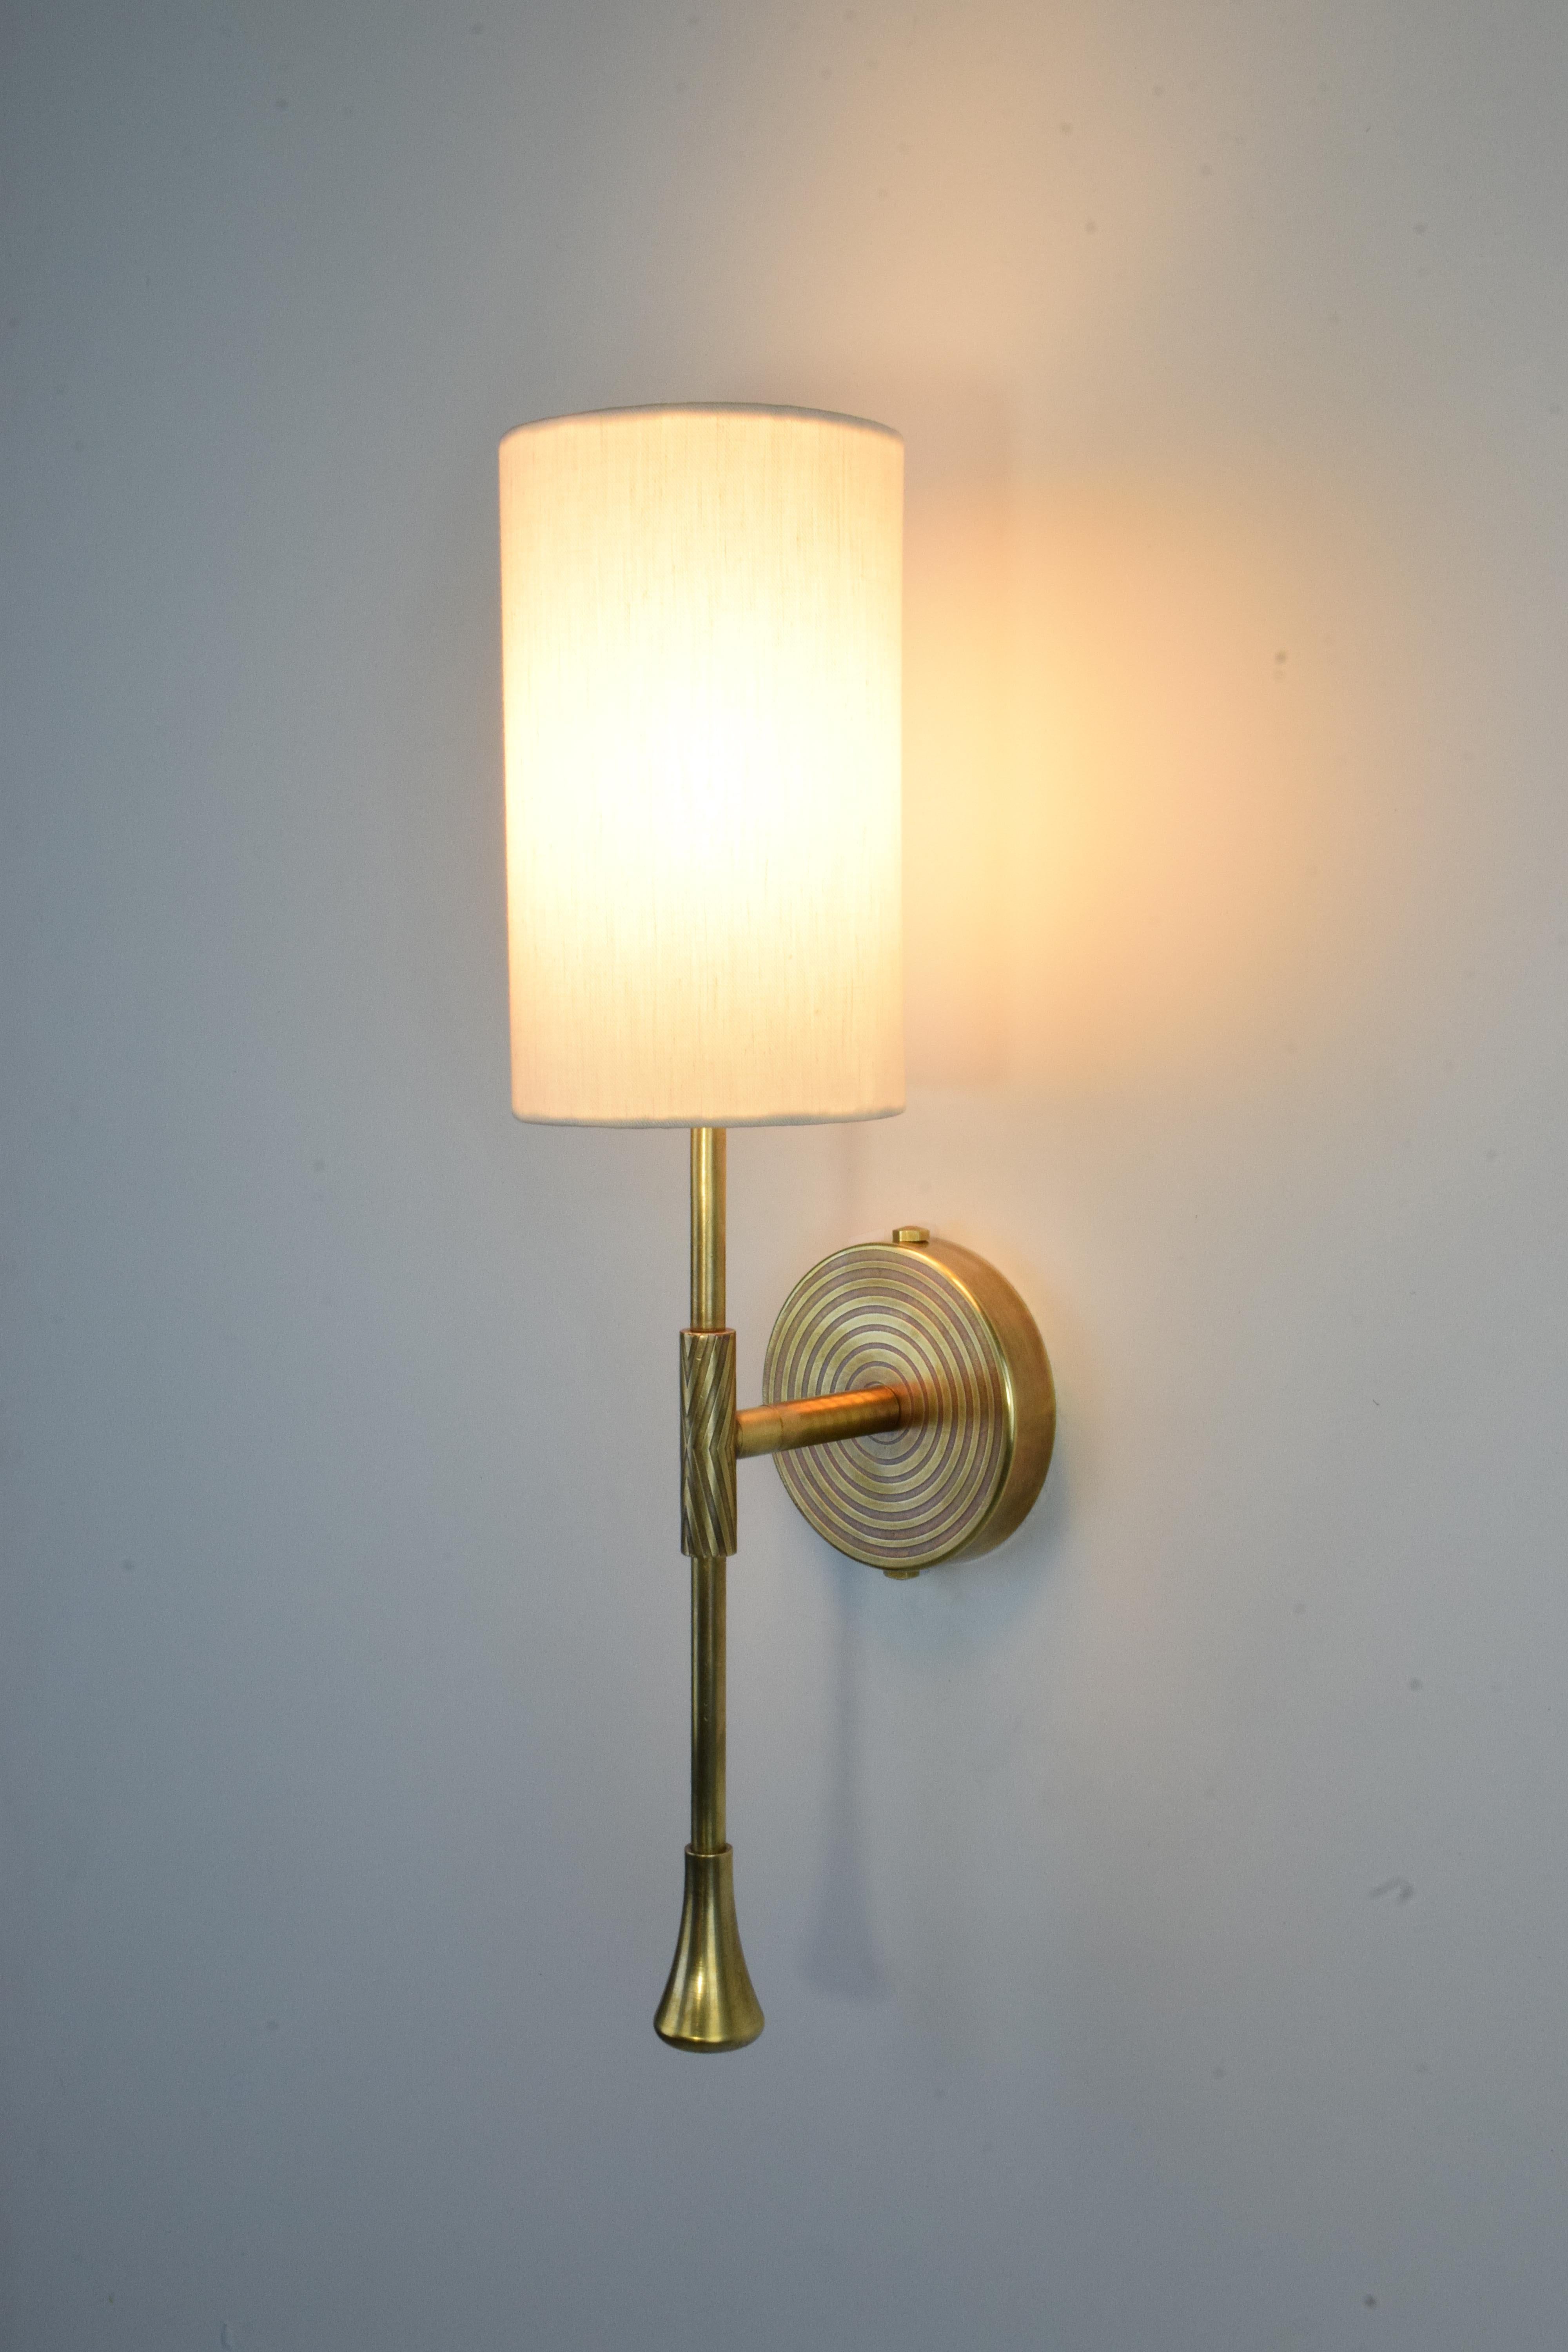 Modern DAYA-WM Engraved Brass Wall Light, Flow 2 Collection